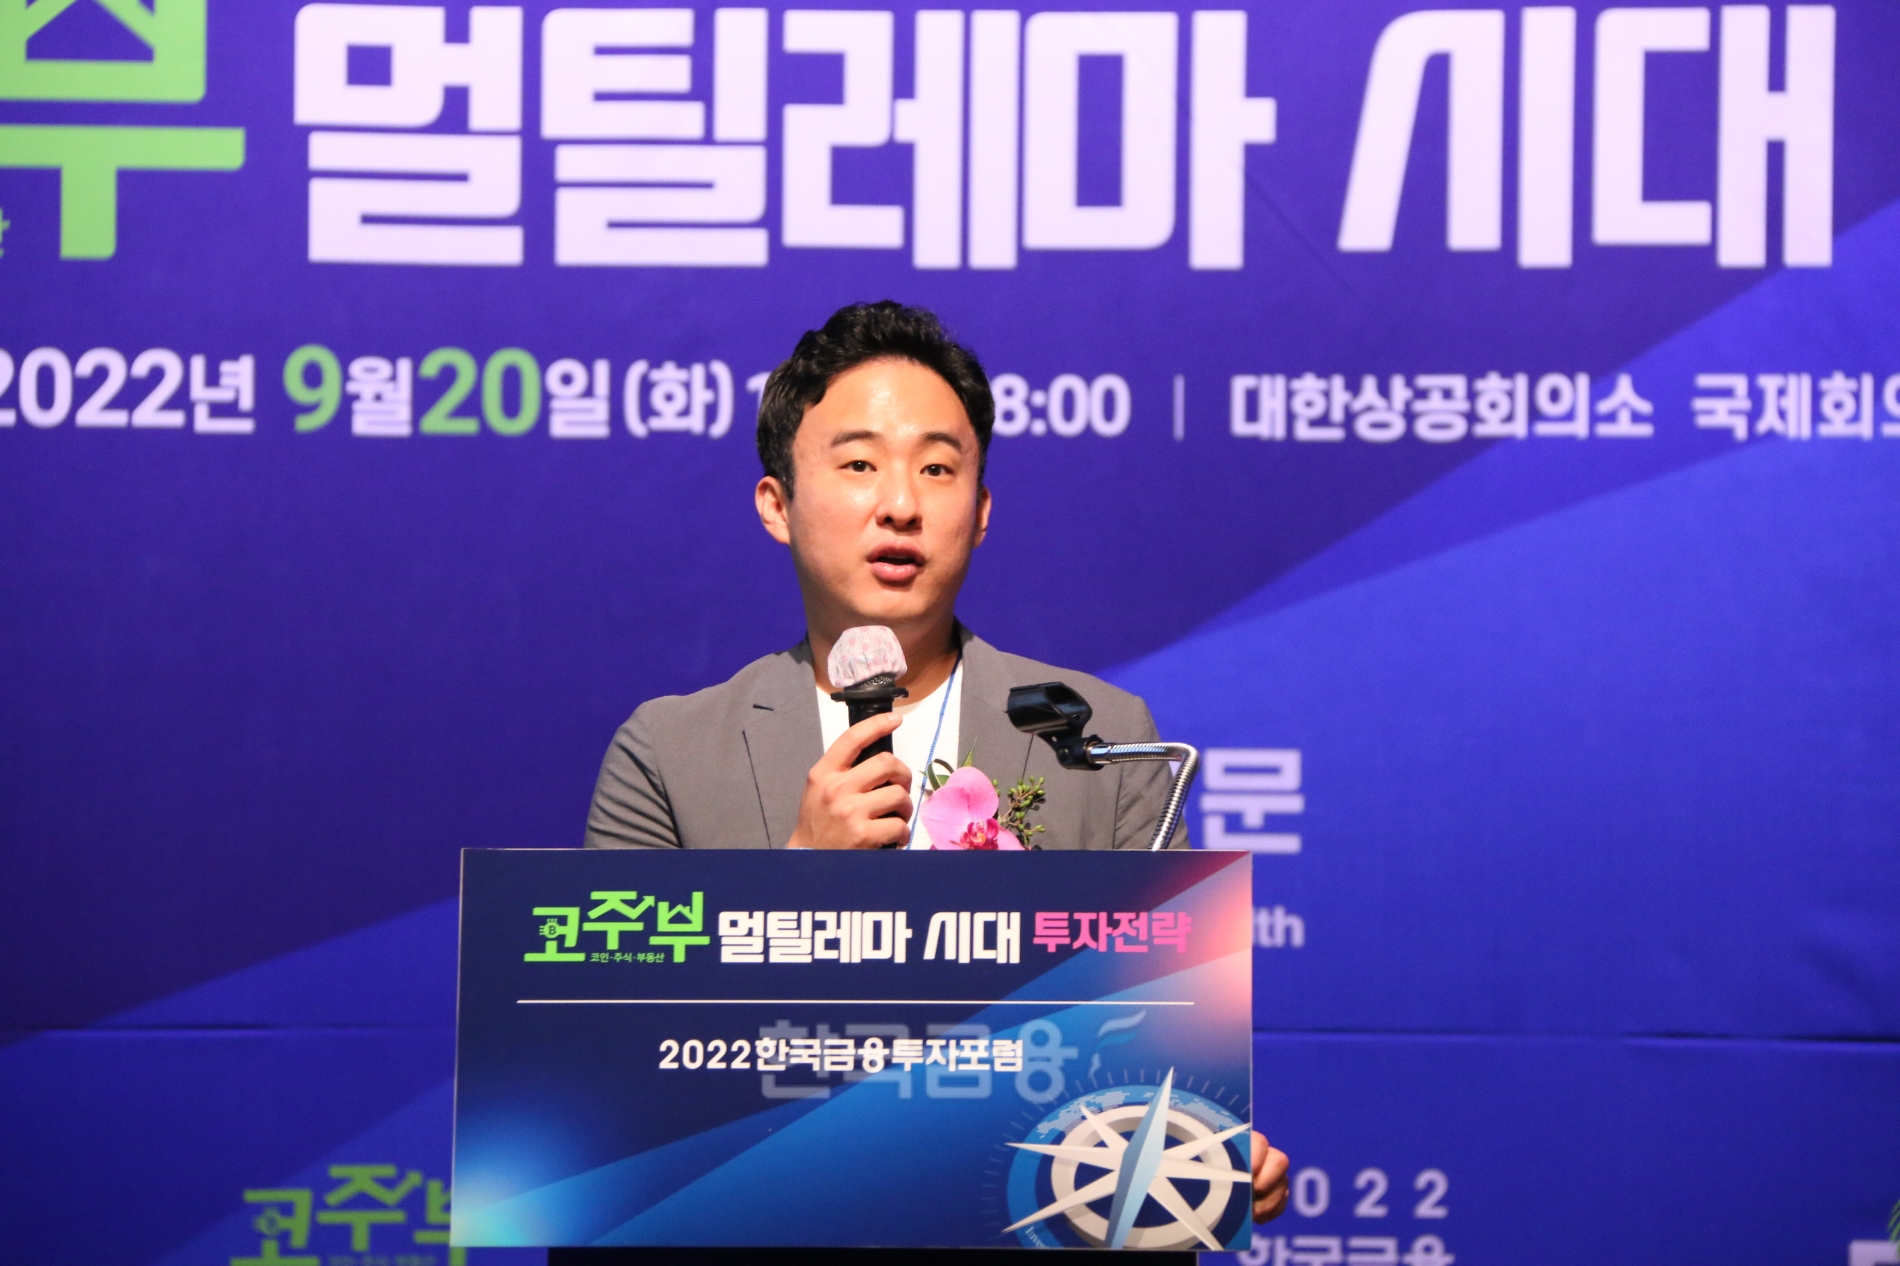 이준행 스트리미(Streami‧고팍스) 대표가 20일 대한상공회의소 국제회의장에서 열린 ‘2022 한국금융투자포럼’에서 가상 자산 투자 트렌드(Trend‧최신 경향)를 설명하고 있다./사진=장호성 기자